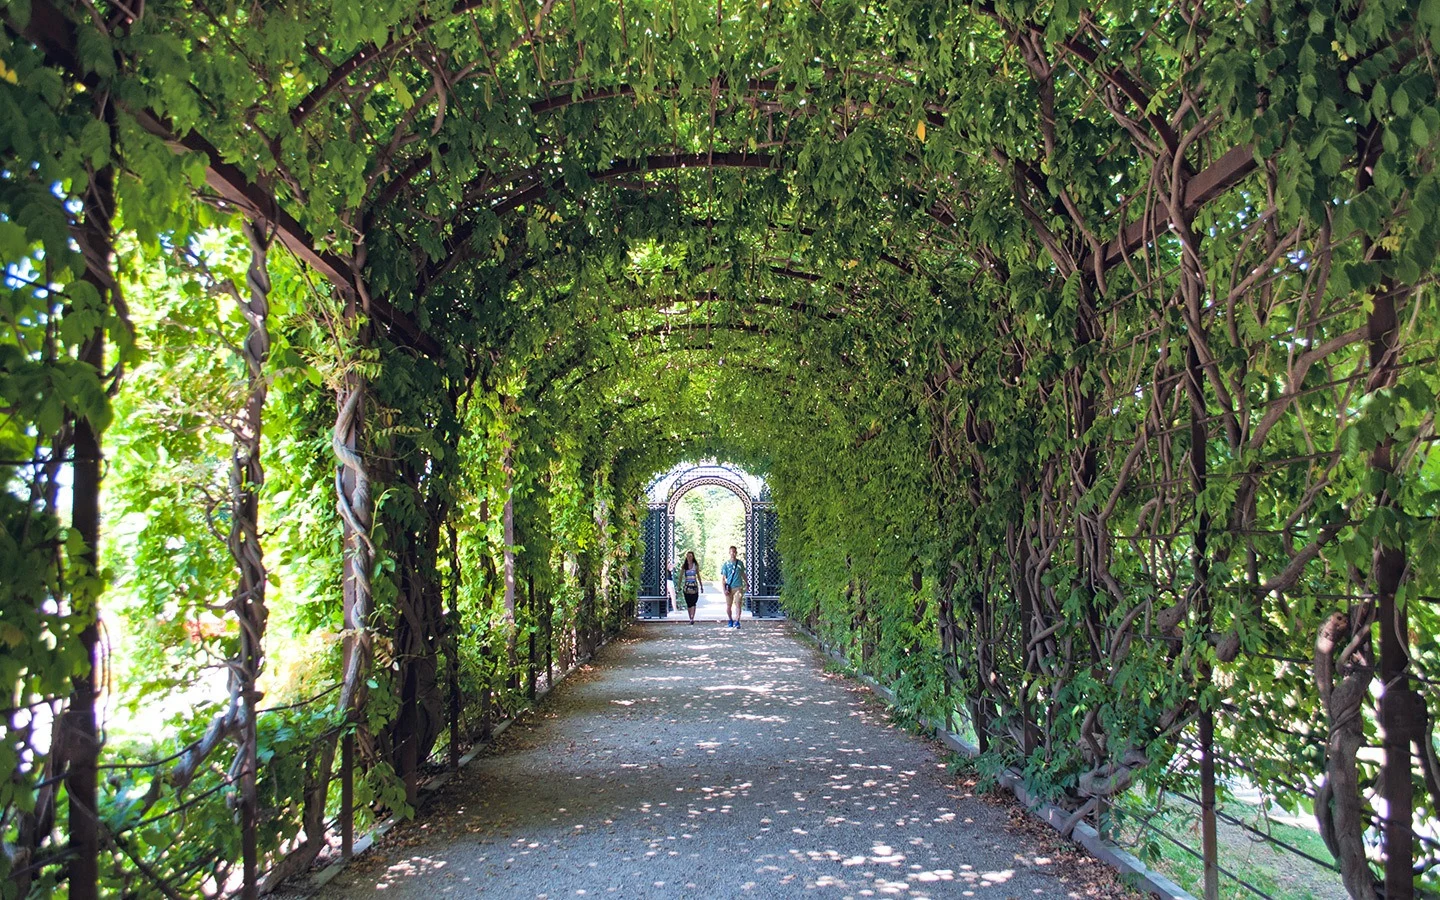 The Schonbrunn Palace gardens in Vienna, Austria